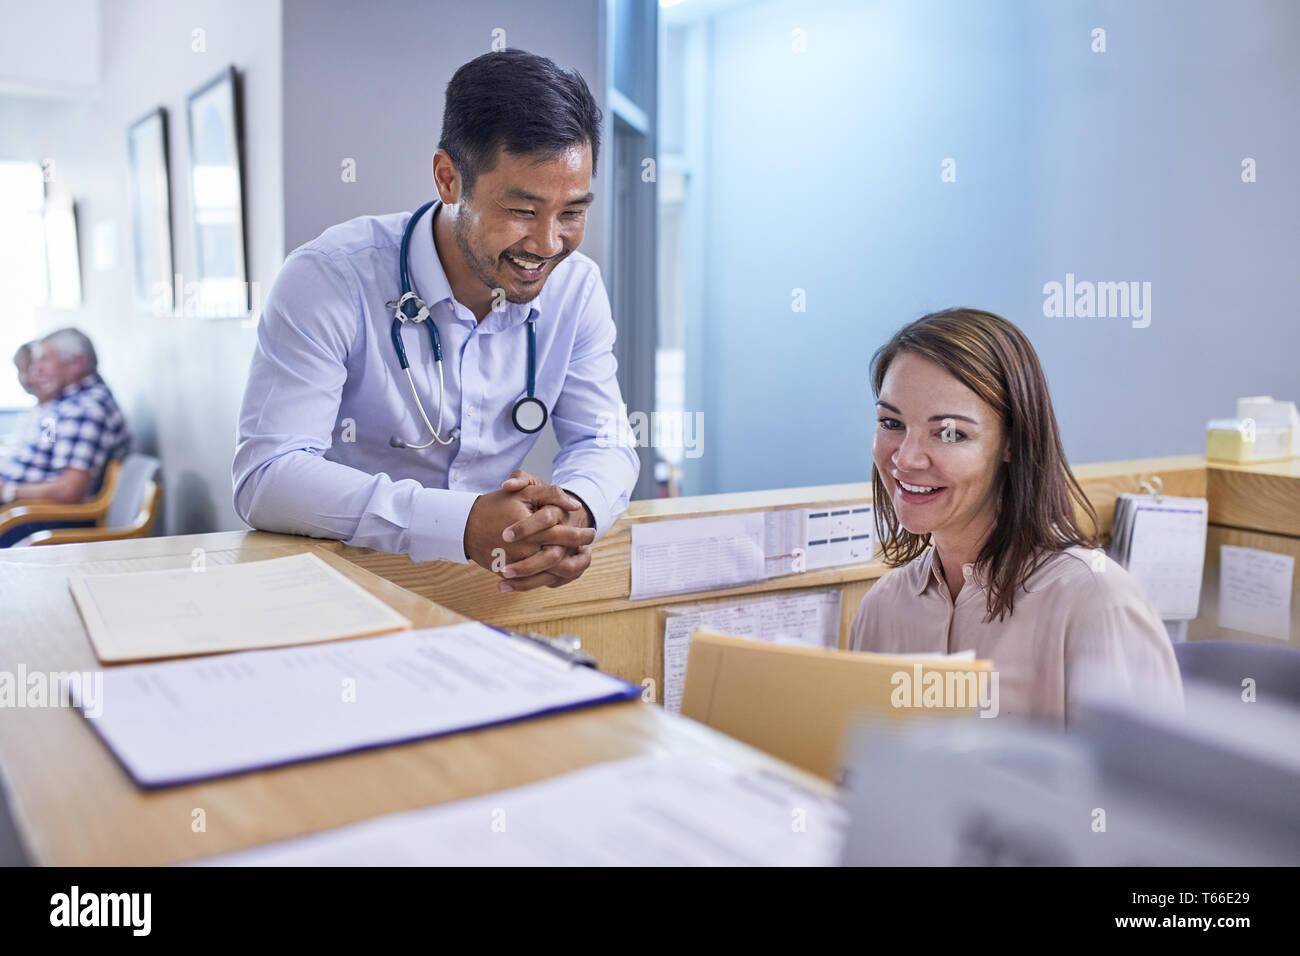 Lächelnd Arzt und der Rezeptionist diskutieren medizinische Aufzeichnung in der Klinik Stockfoto